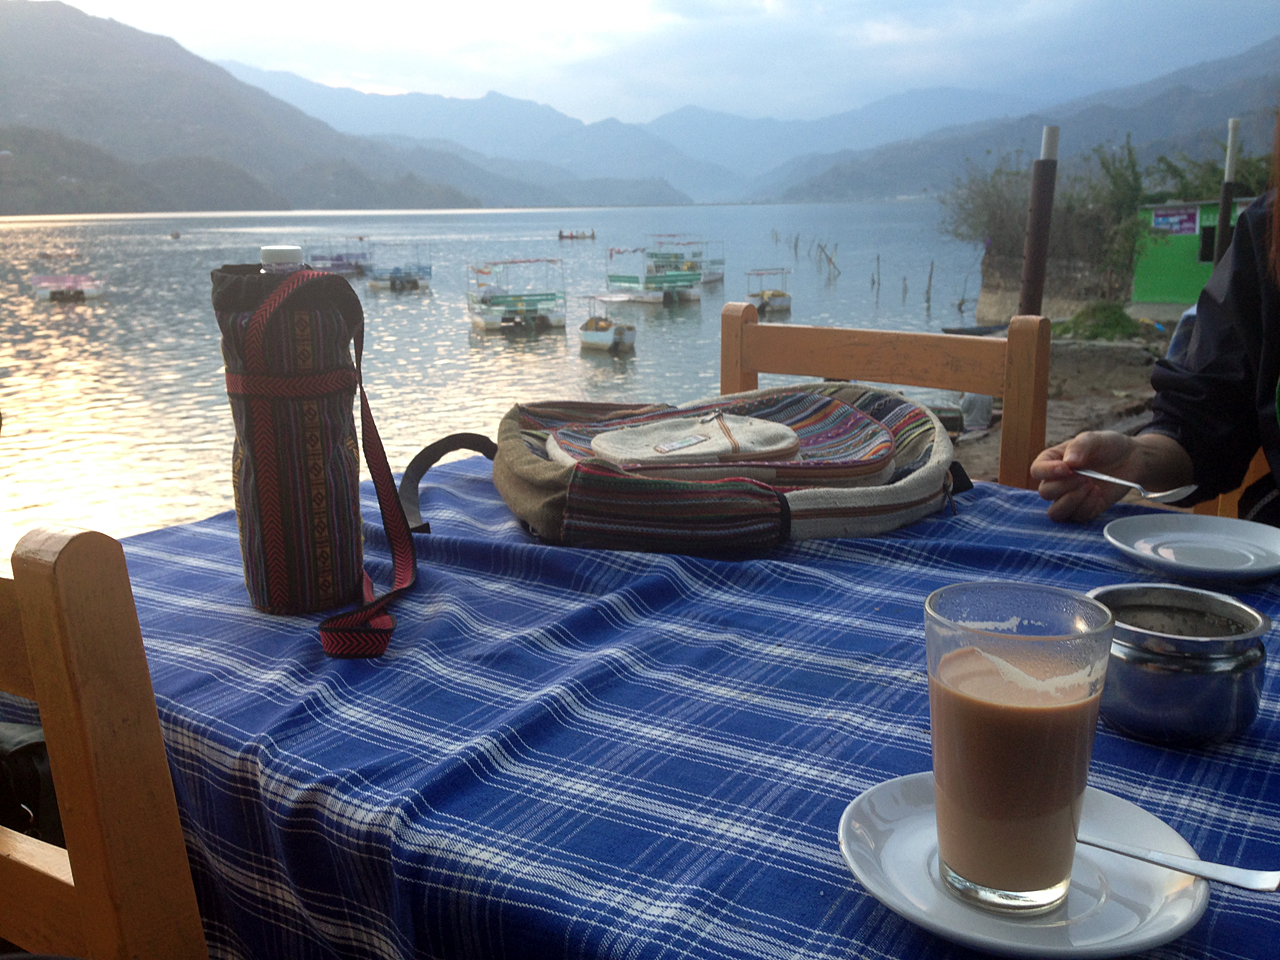  네팔 포카라 페와 호수 바로 옆에서 마시는 찌아(밀크티) 한 잔. 